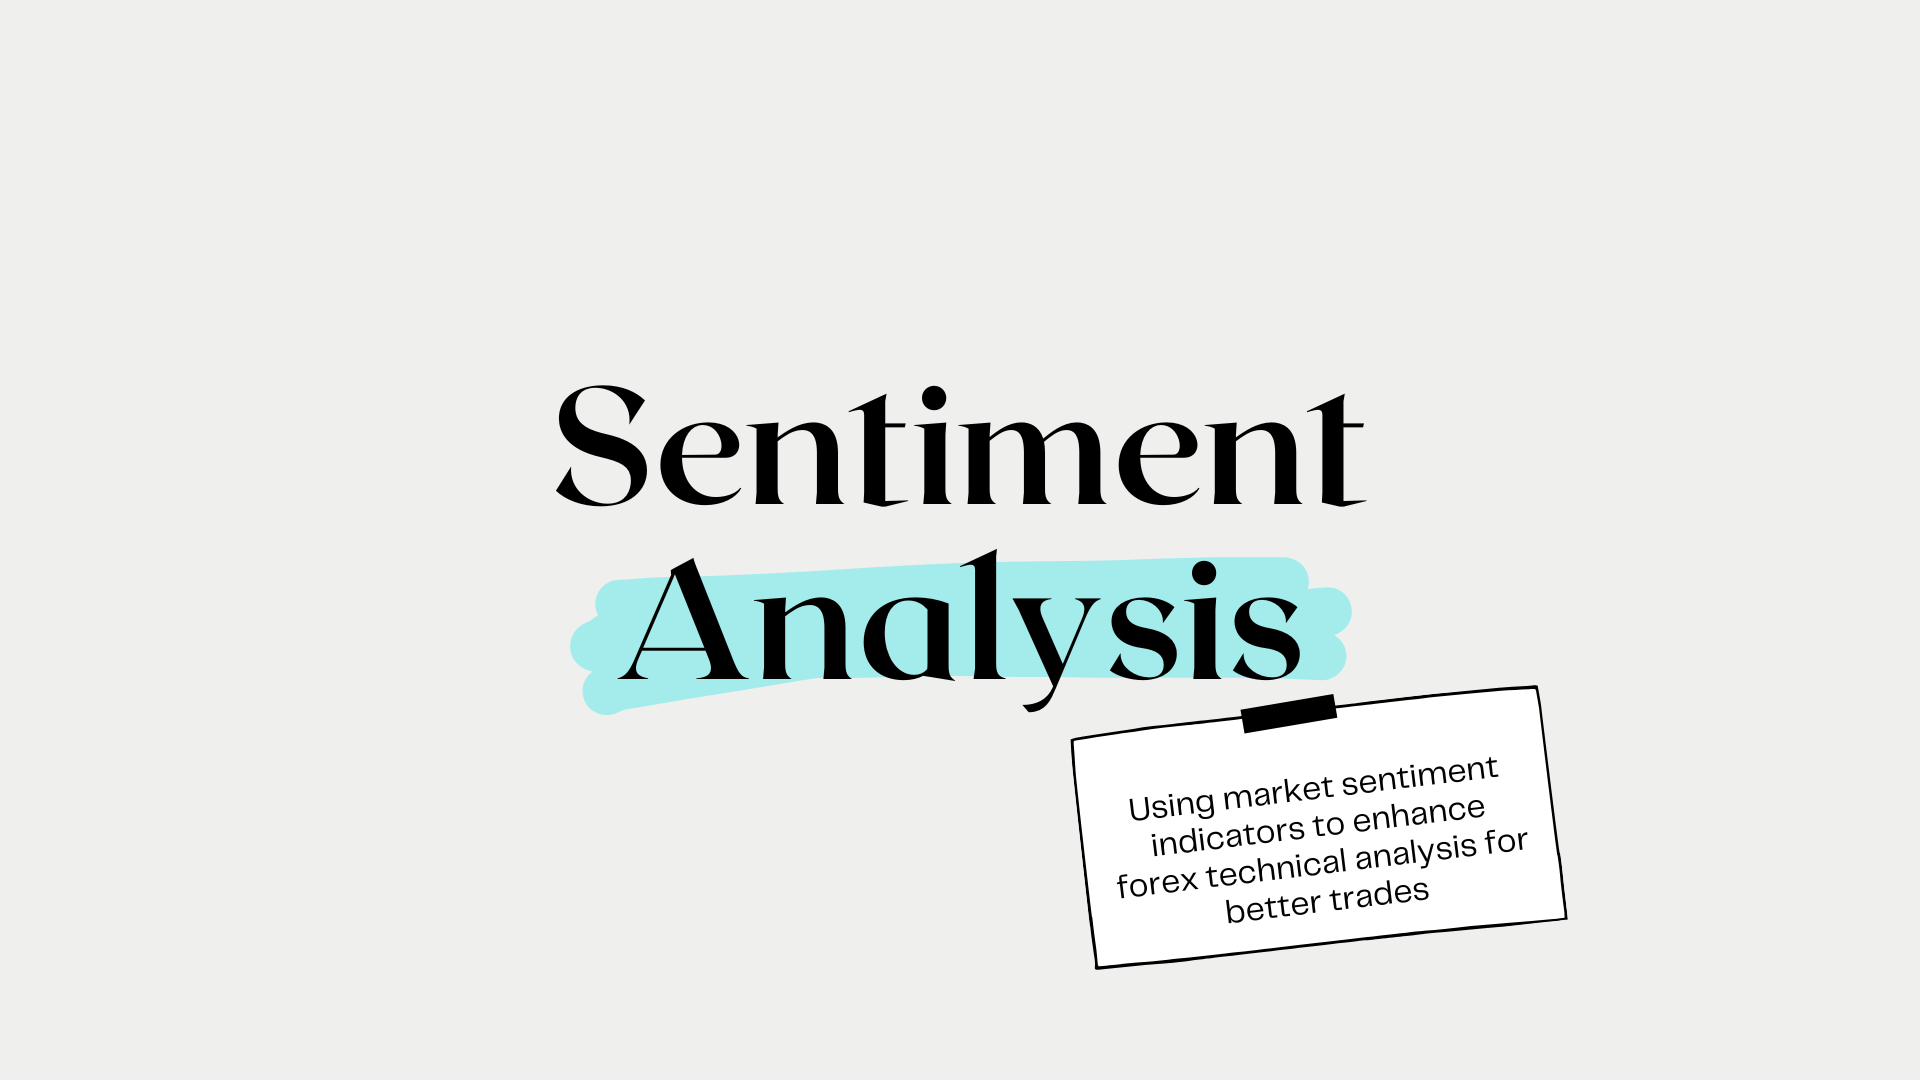 Market Sentiment Indicators